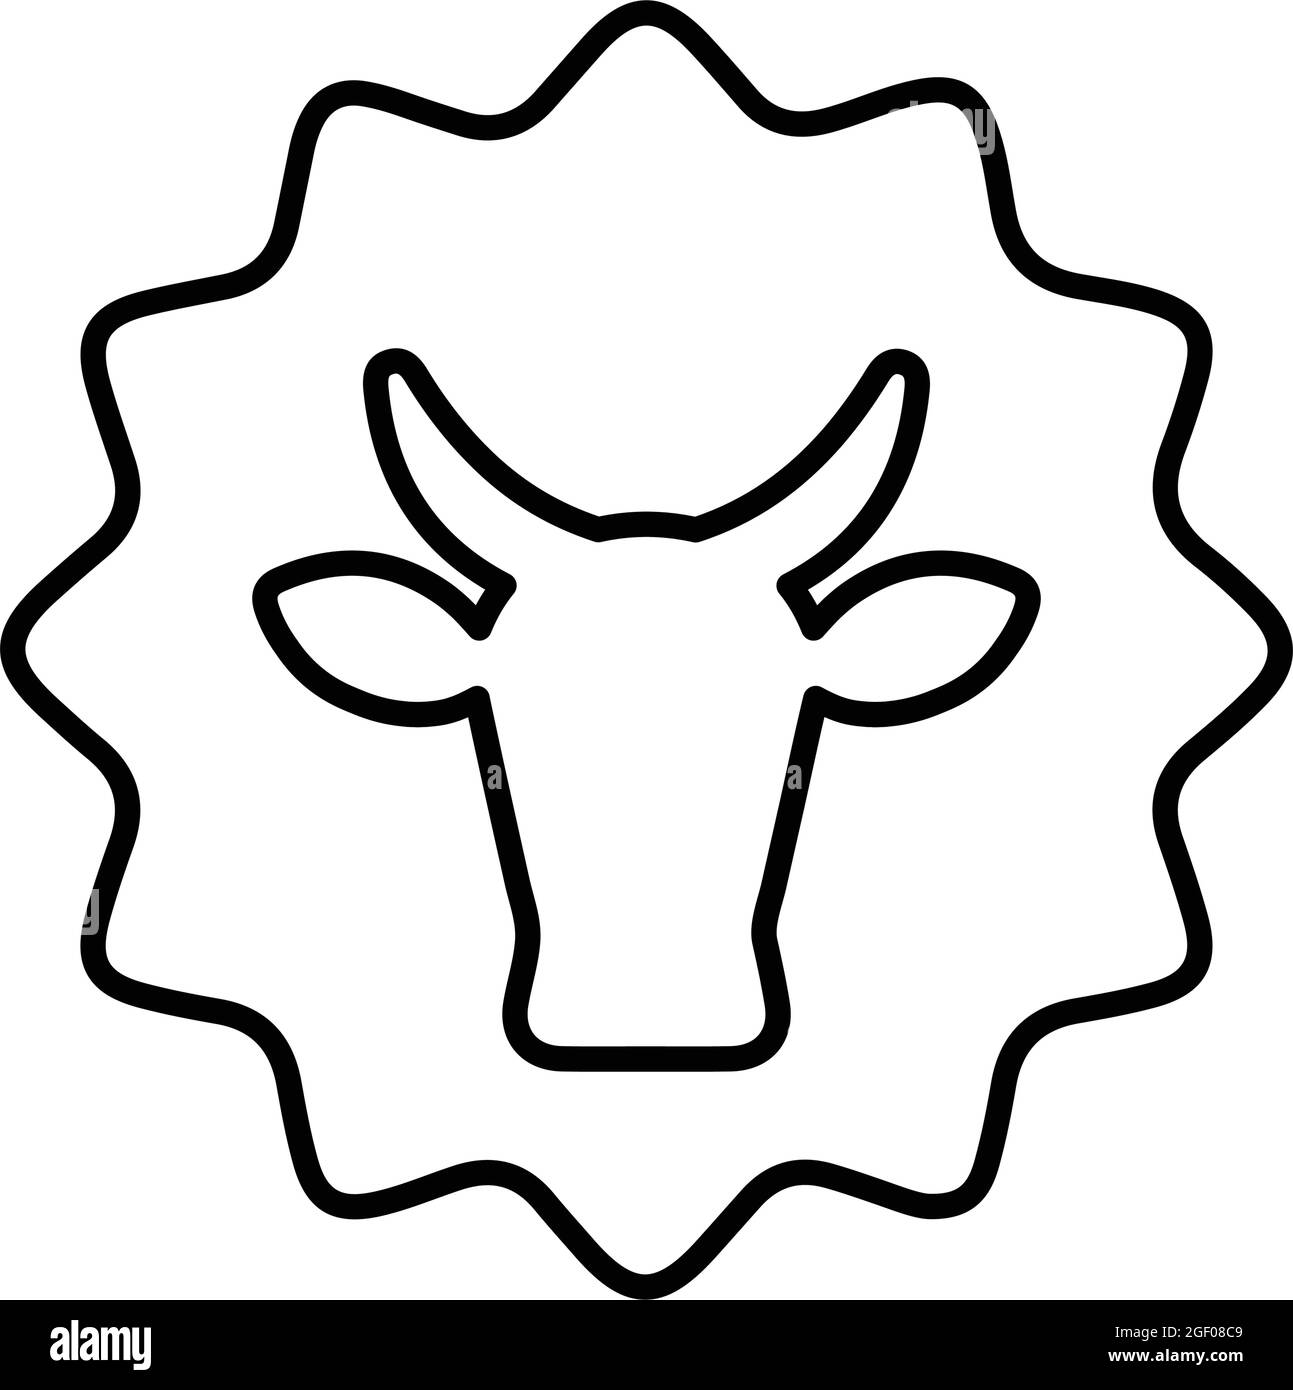 etichetta di qualità, l'icona della mucca migliore è isolata su sfondo bianco. Semplice illustrazione vettoriale per grafica e web design o scopi commerciali. Illustrazione Vettoriale